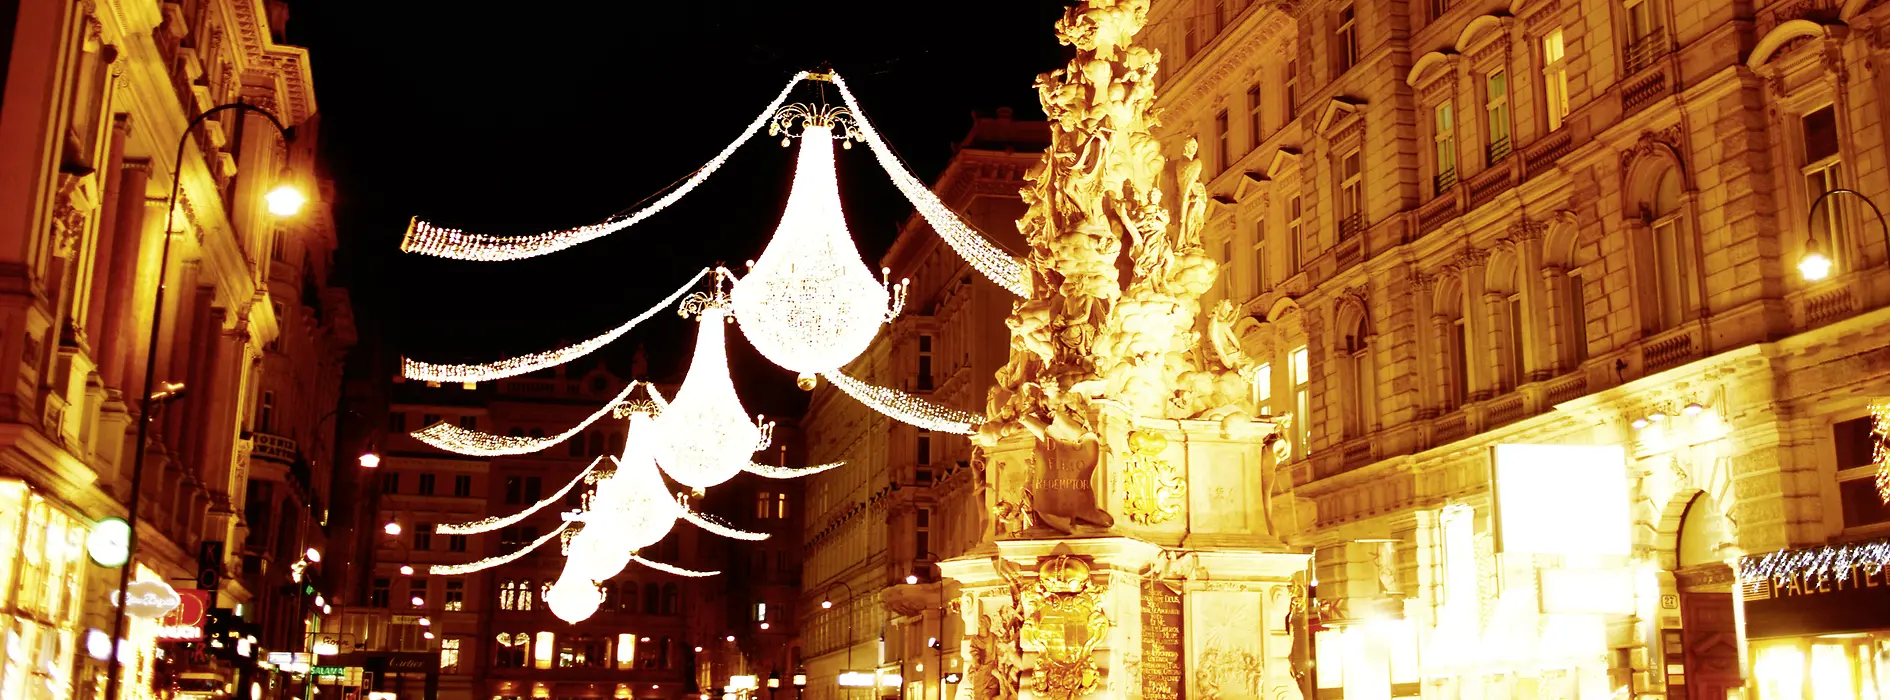 Vánoèní osvìtlení v ulici Graben 